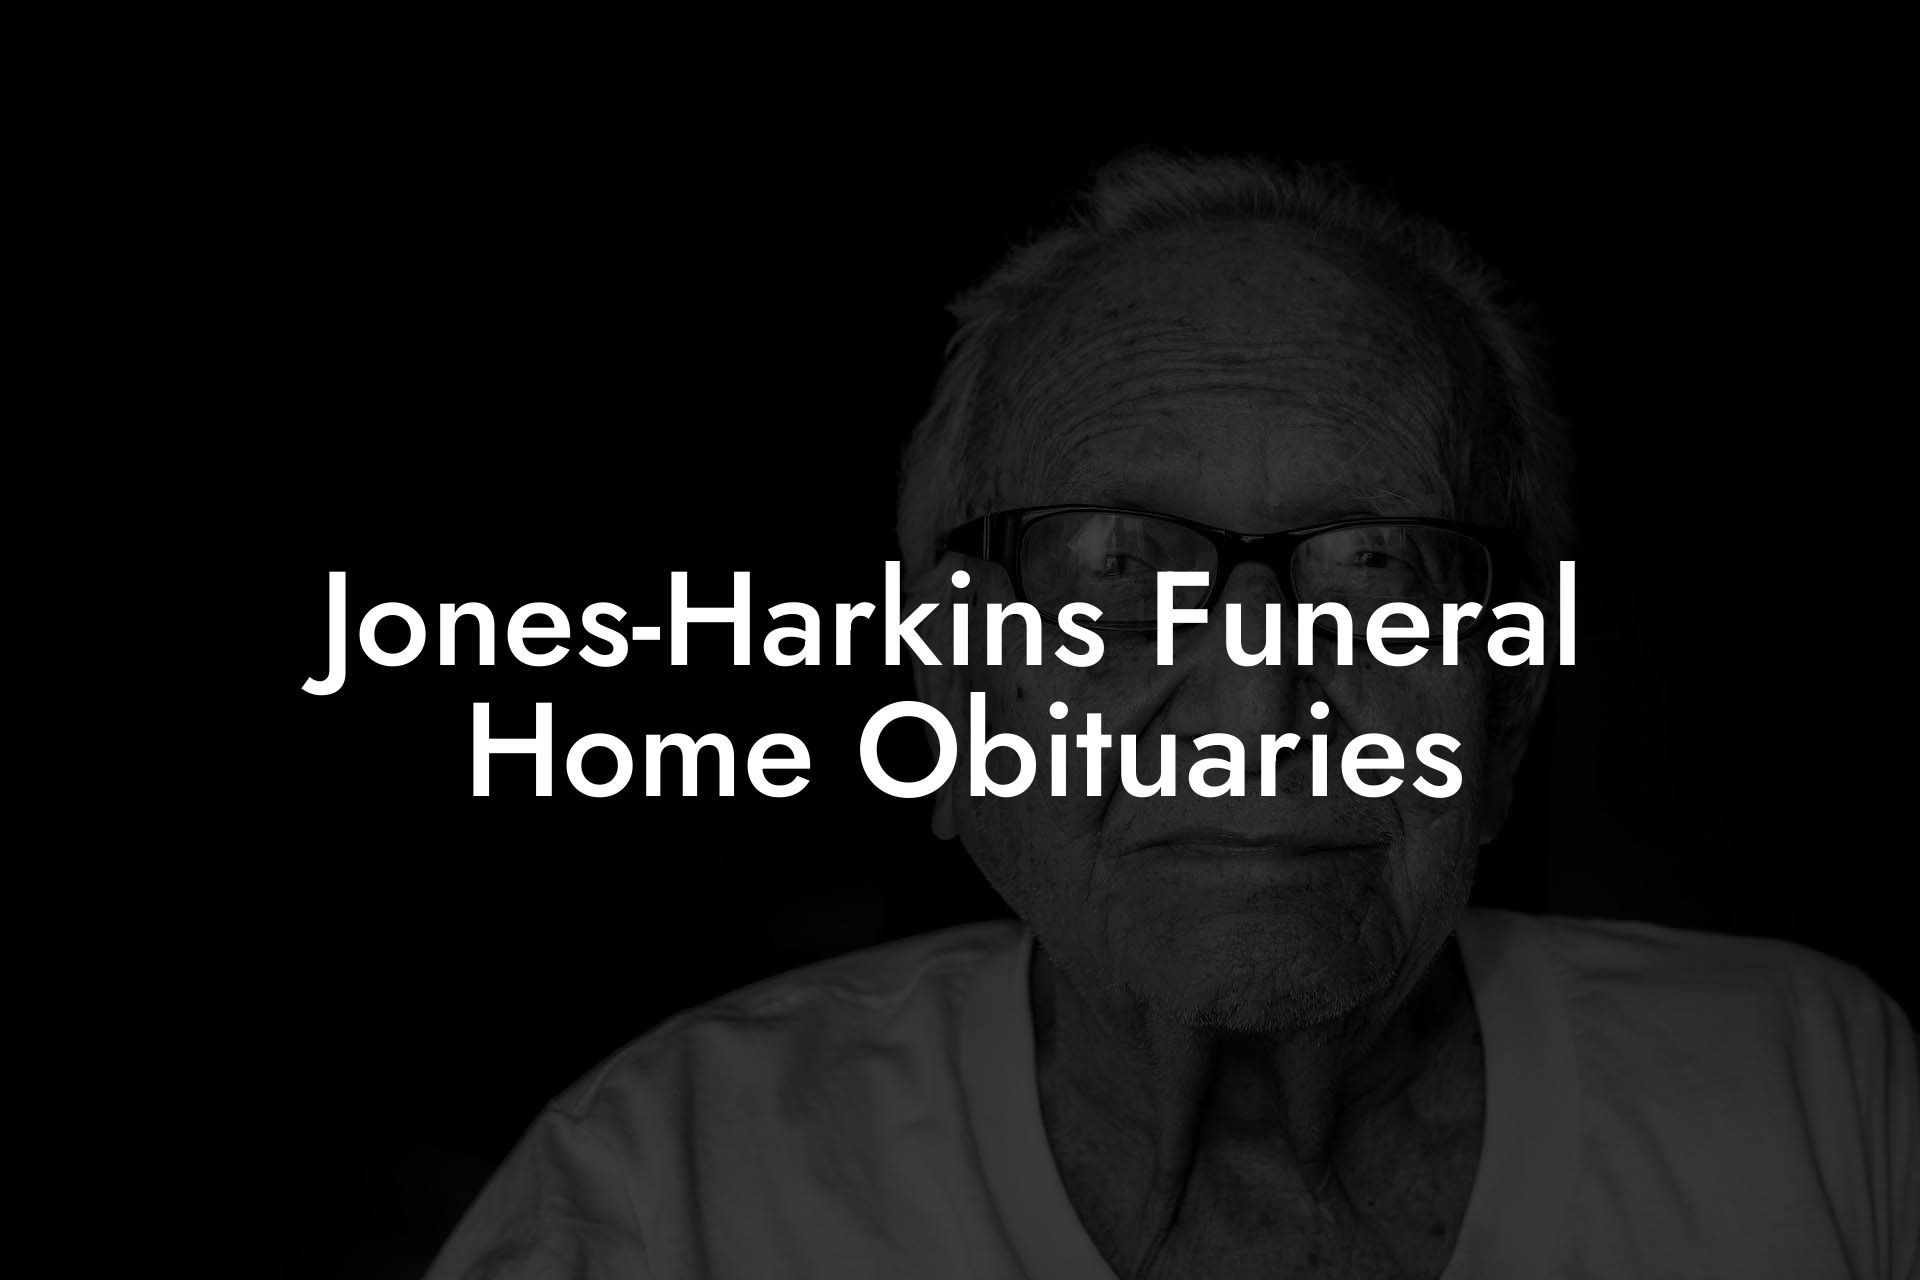 Jones-Harkins Funeral Home Obituaries